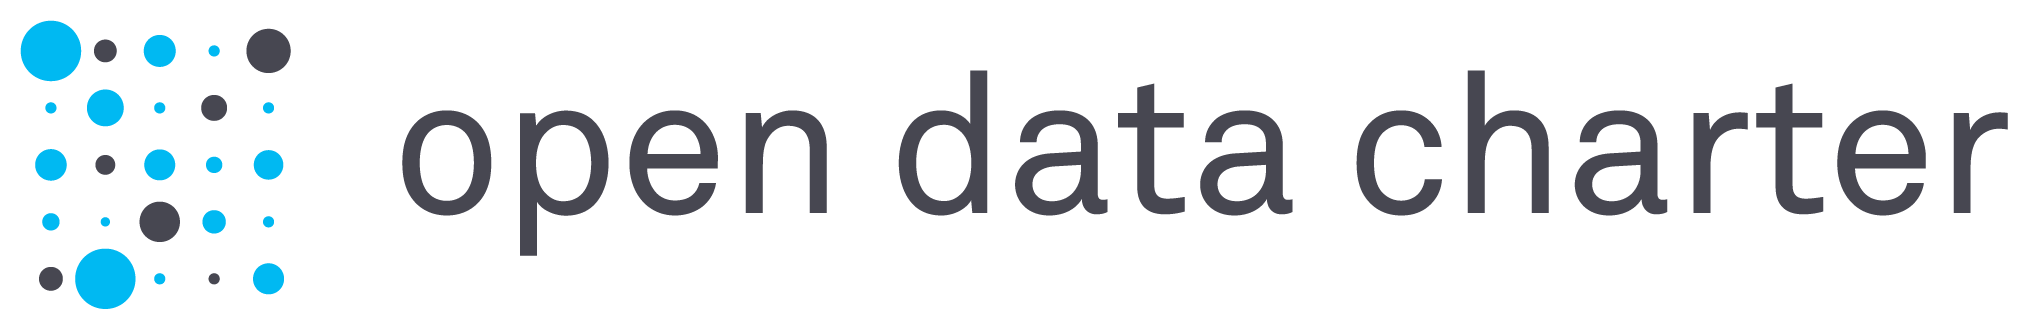 Charter.net Logo - The International Open Data Charter